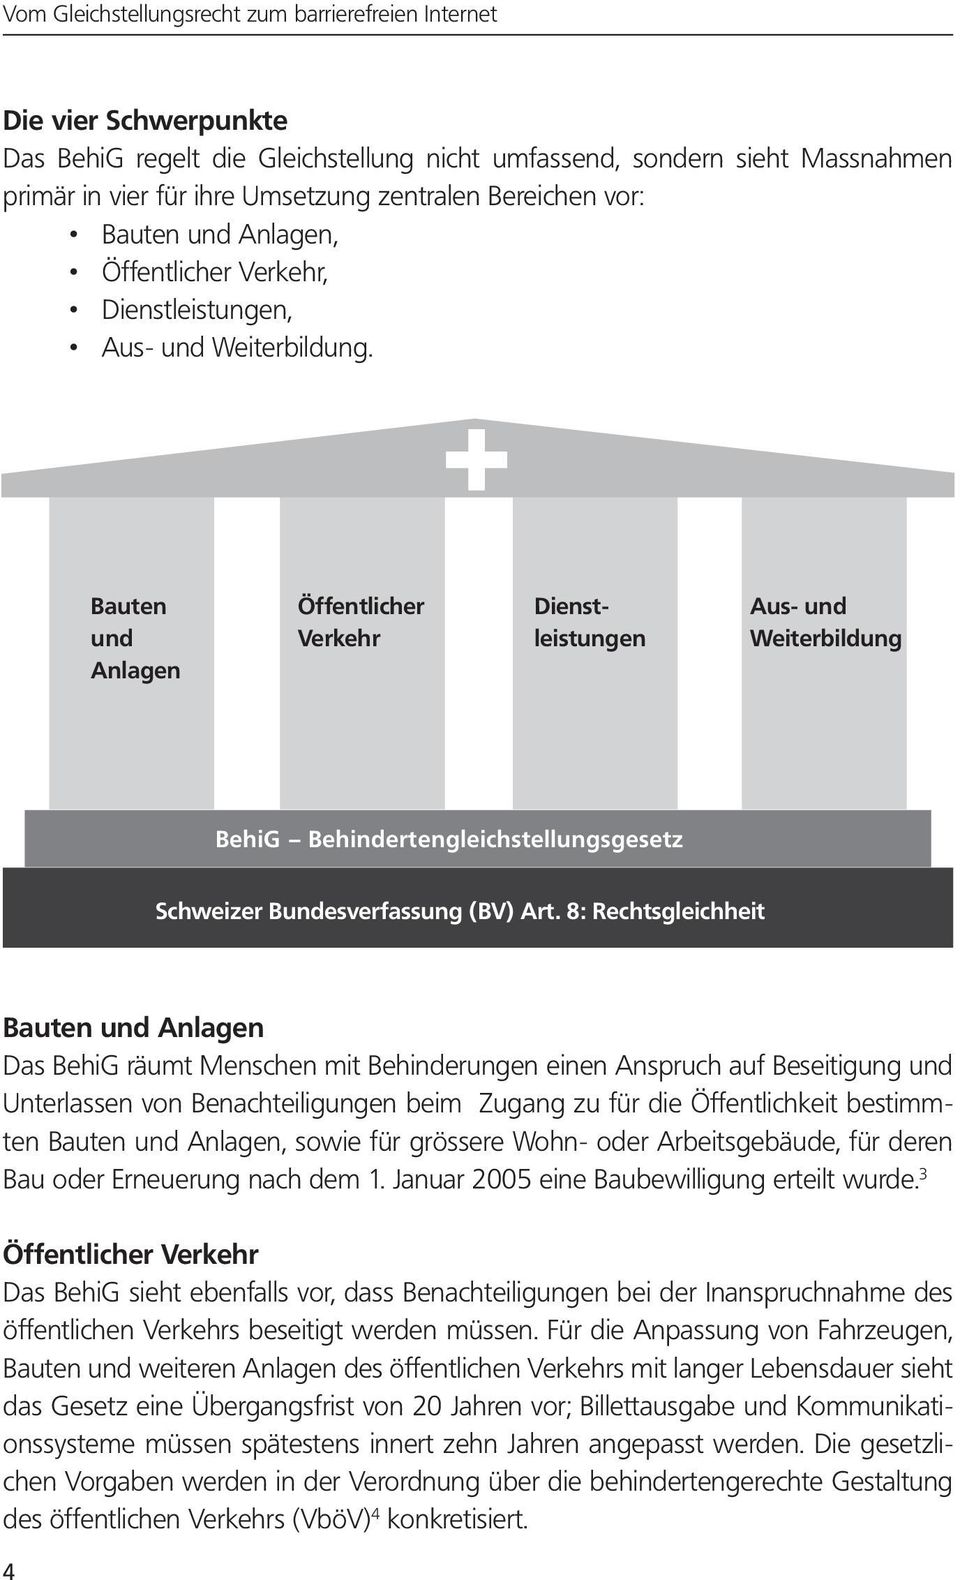 Bauten und Anlagen Öffentlicher Verkehr Dienstleistungen Aus- und Weiterbildung BehiG Behindertengleichstellungsgesetz Schweizer Bundesverfassung (BV) Art.